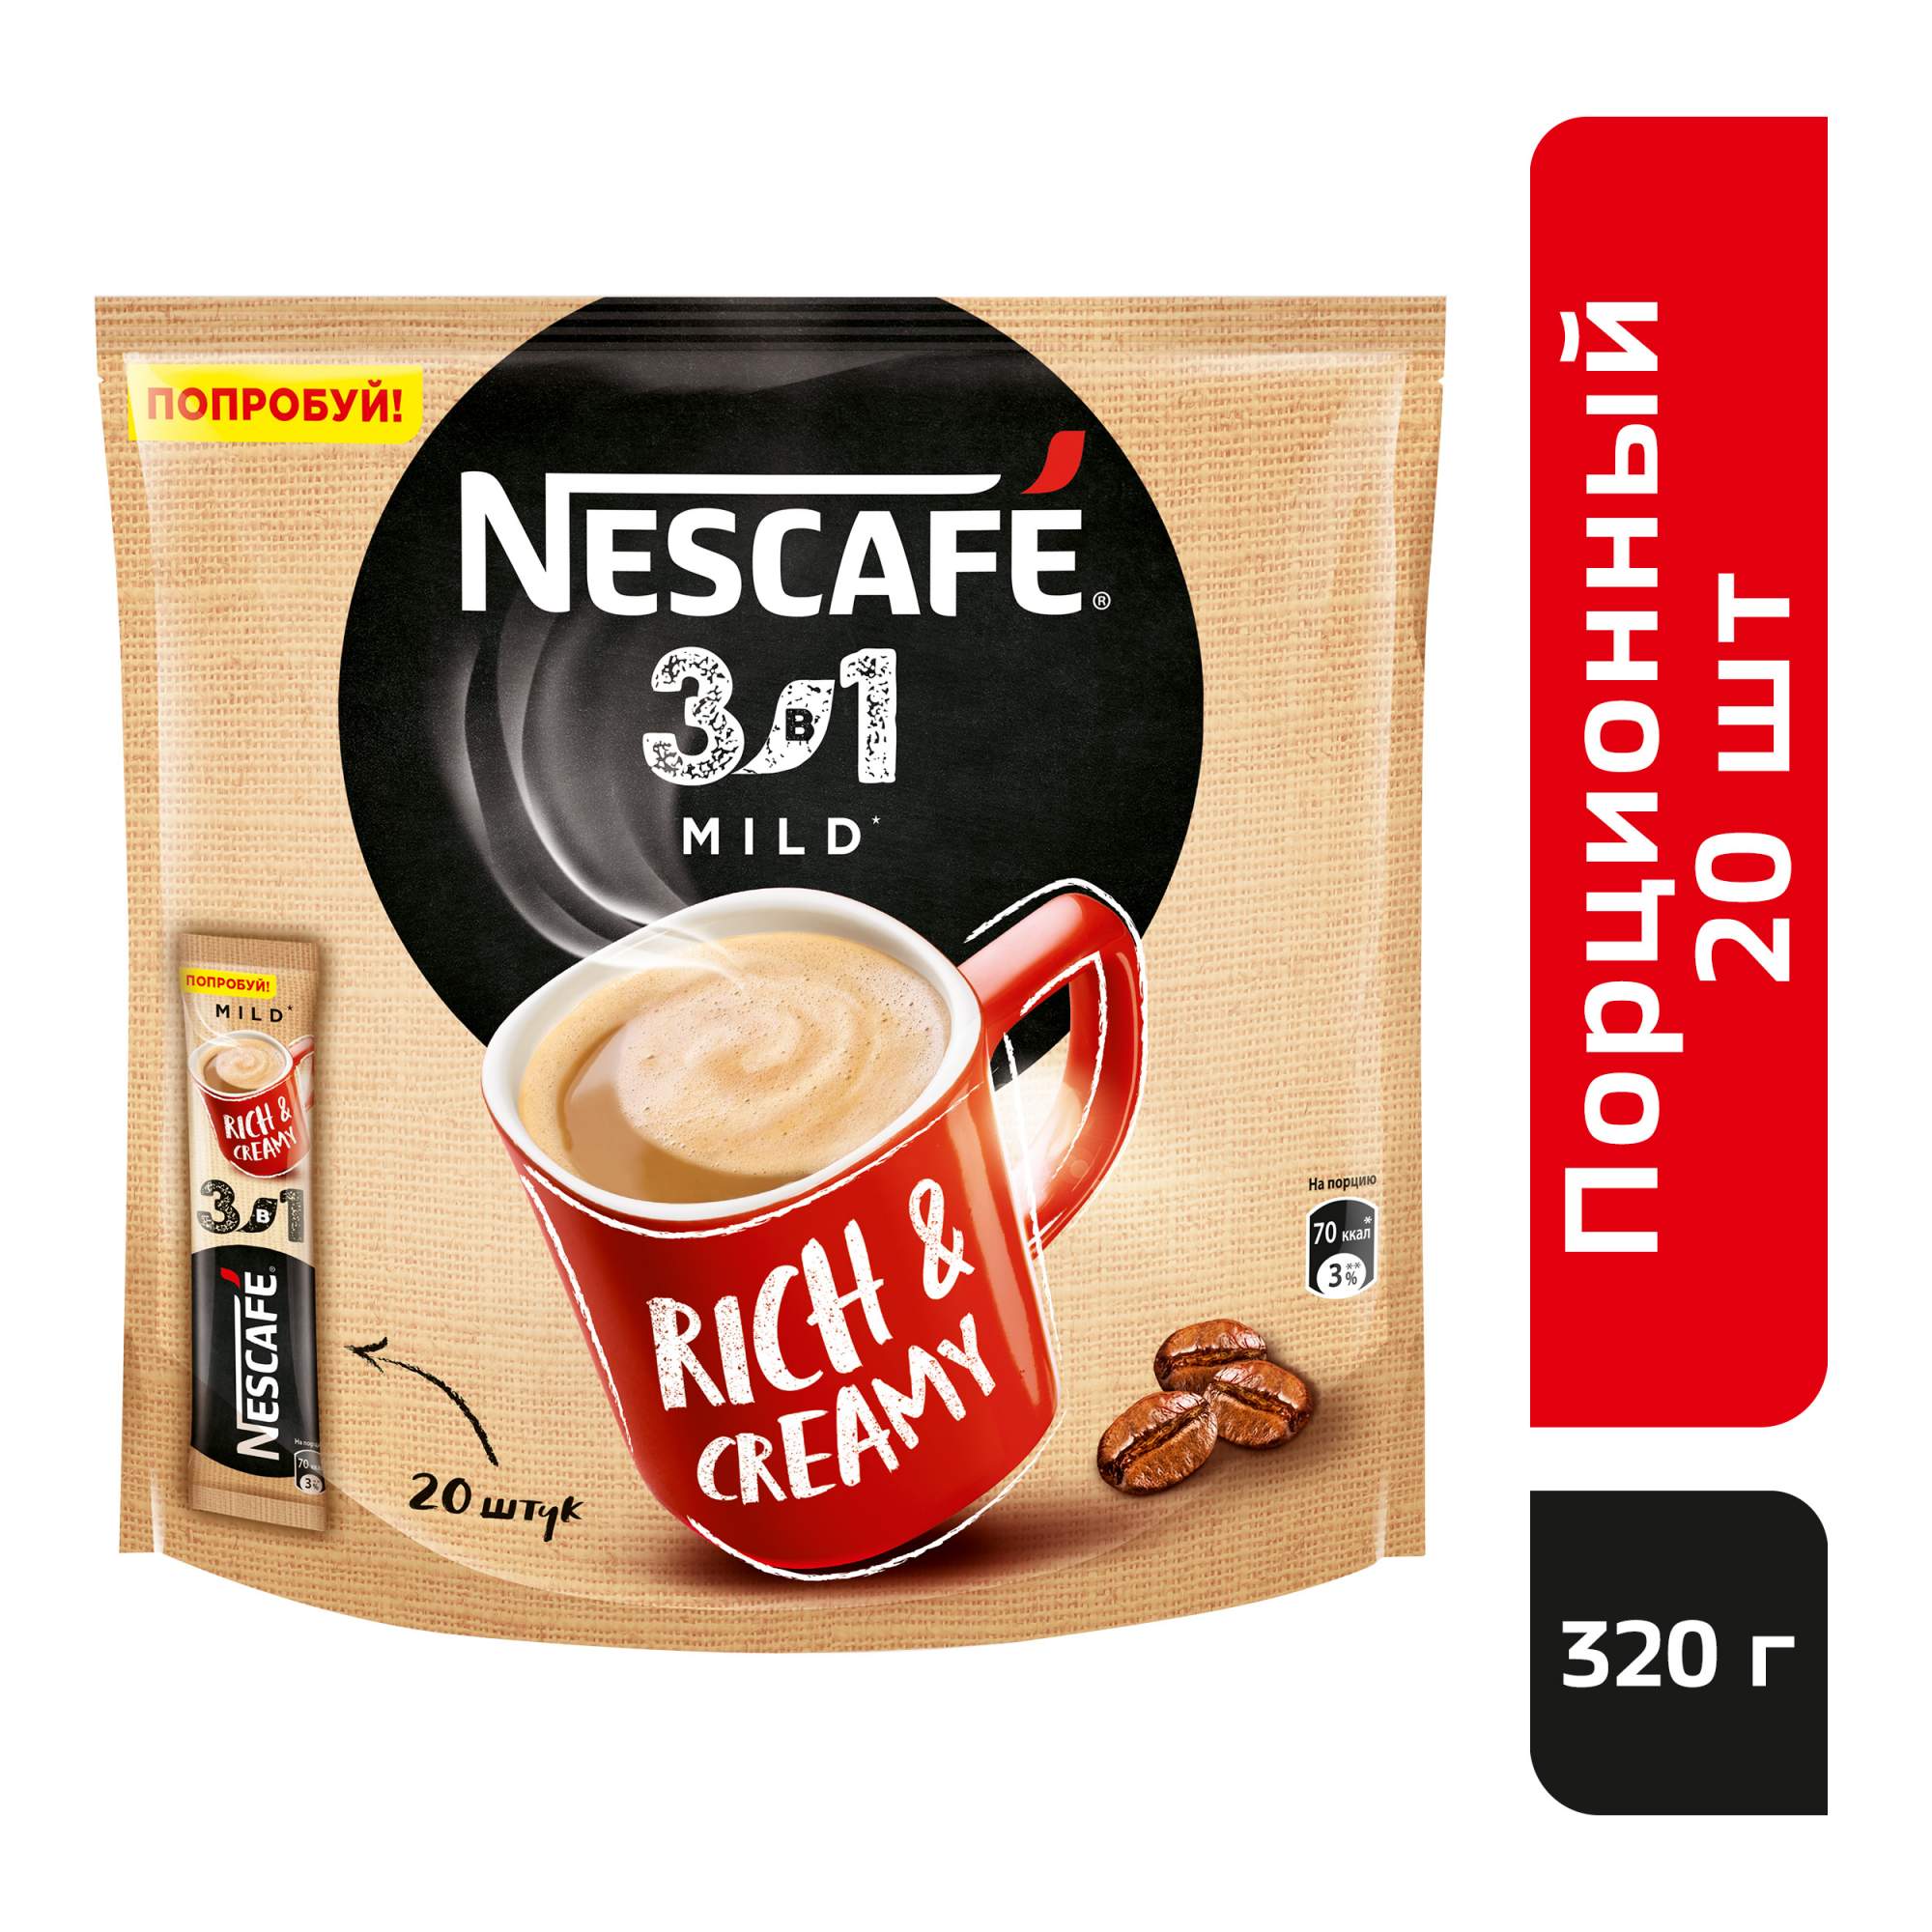 Кофе нескафе в пакетиках. Nescafe 3 в 1 mild. Кофе Nescafe 3в1 mild 14.5гр. Кофе 3 в 1 Нескафе. Нескафе растворимый кофе 3 в 1.